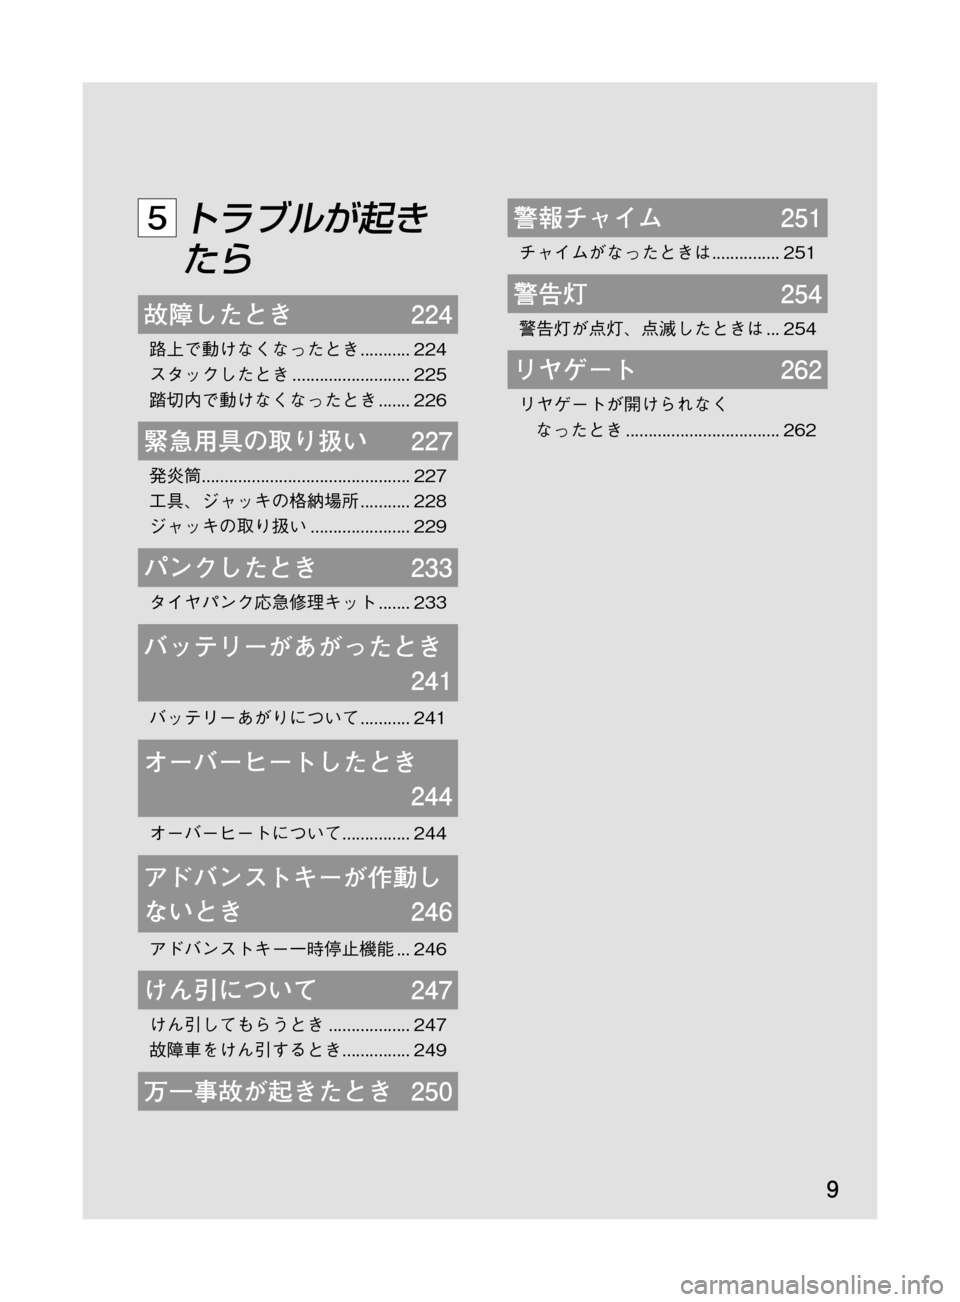 MAZDA MODEL DEMIO 2011  デミオ｜取扱説明書 (in Japanese) �
��P�S�N��/�P���% 